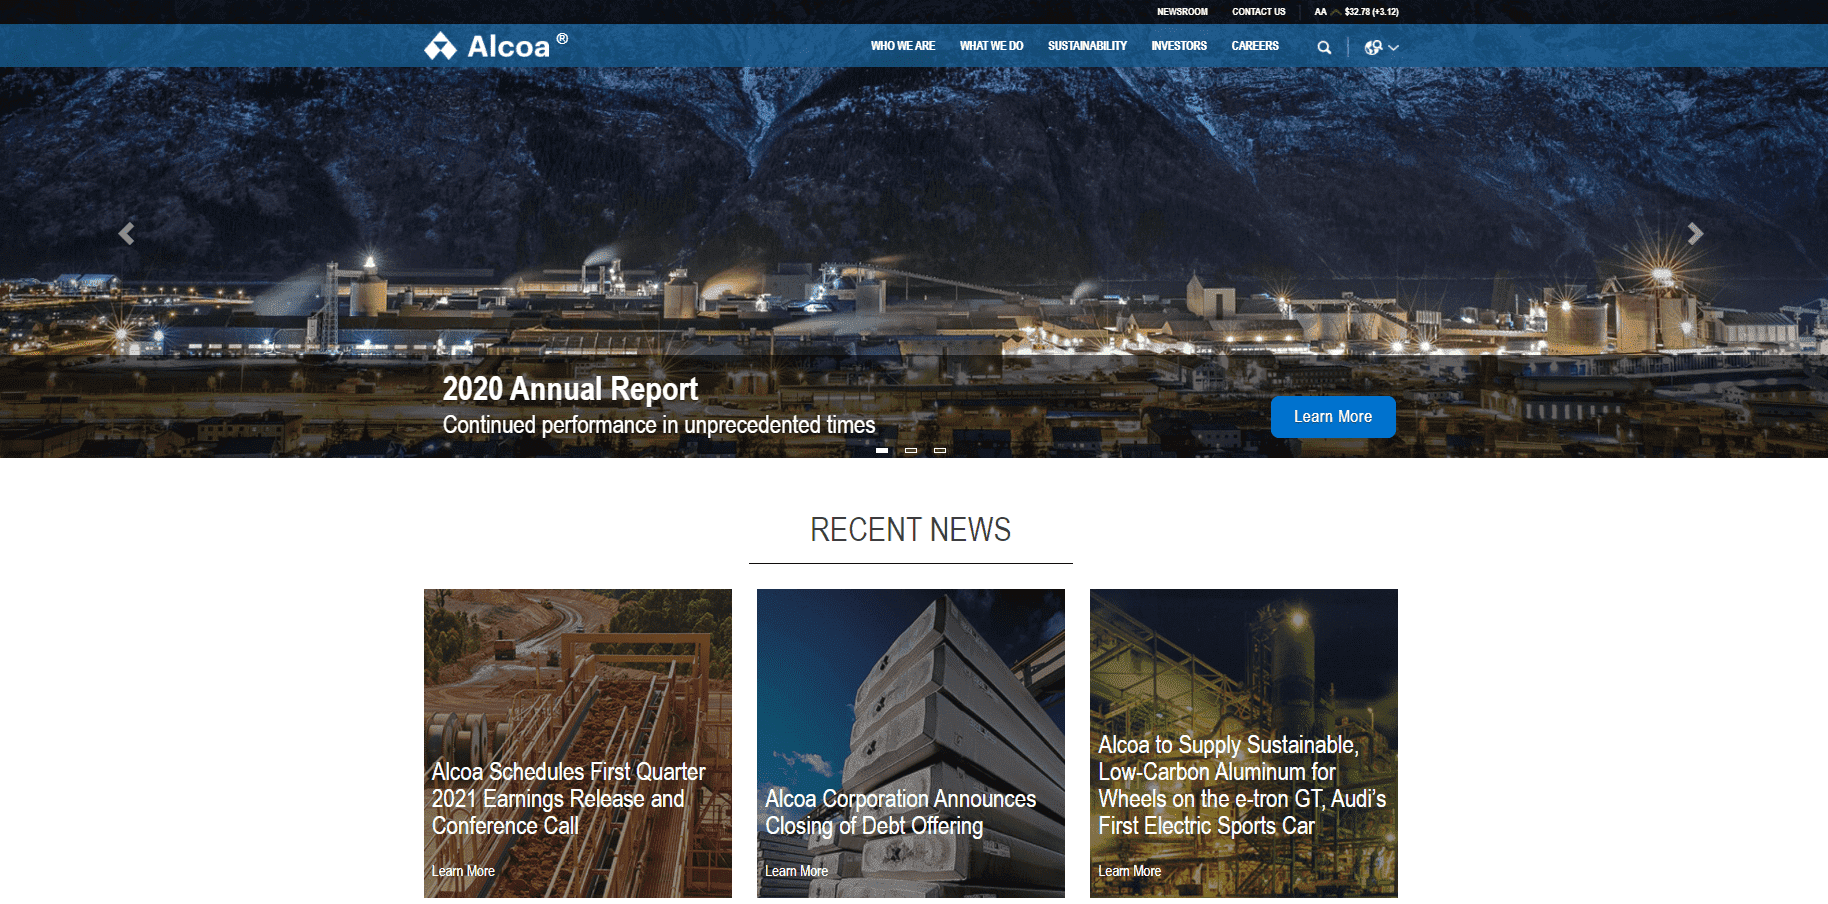 Puede obtener más información sobre la empresa en el sitio web oficial de Alcoa